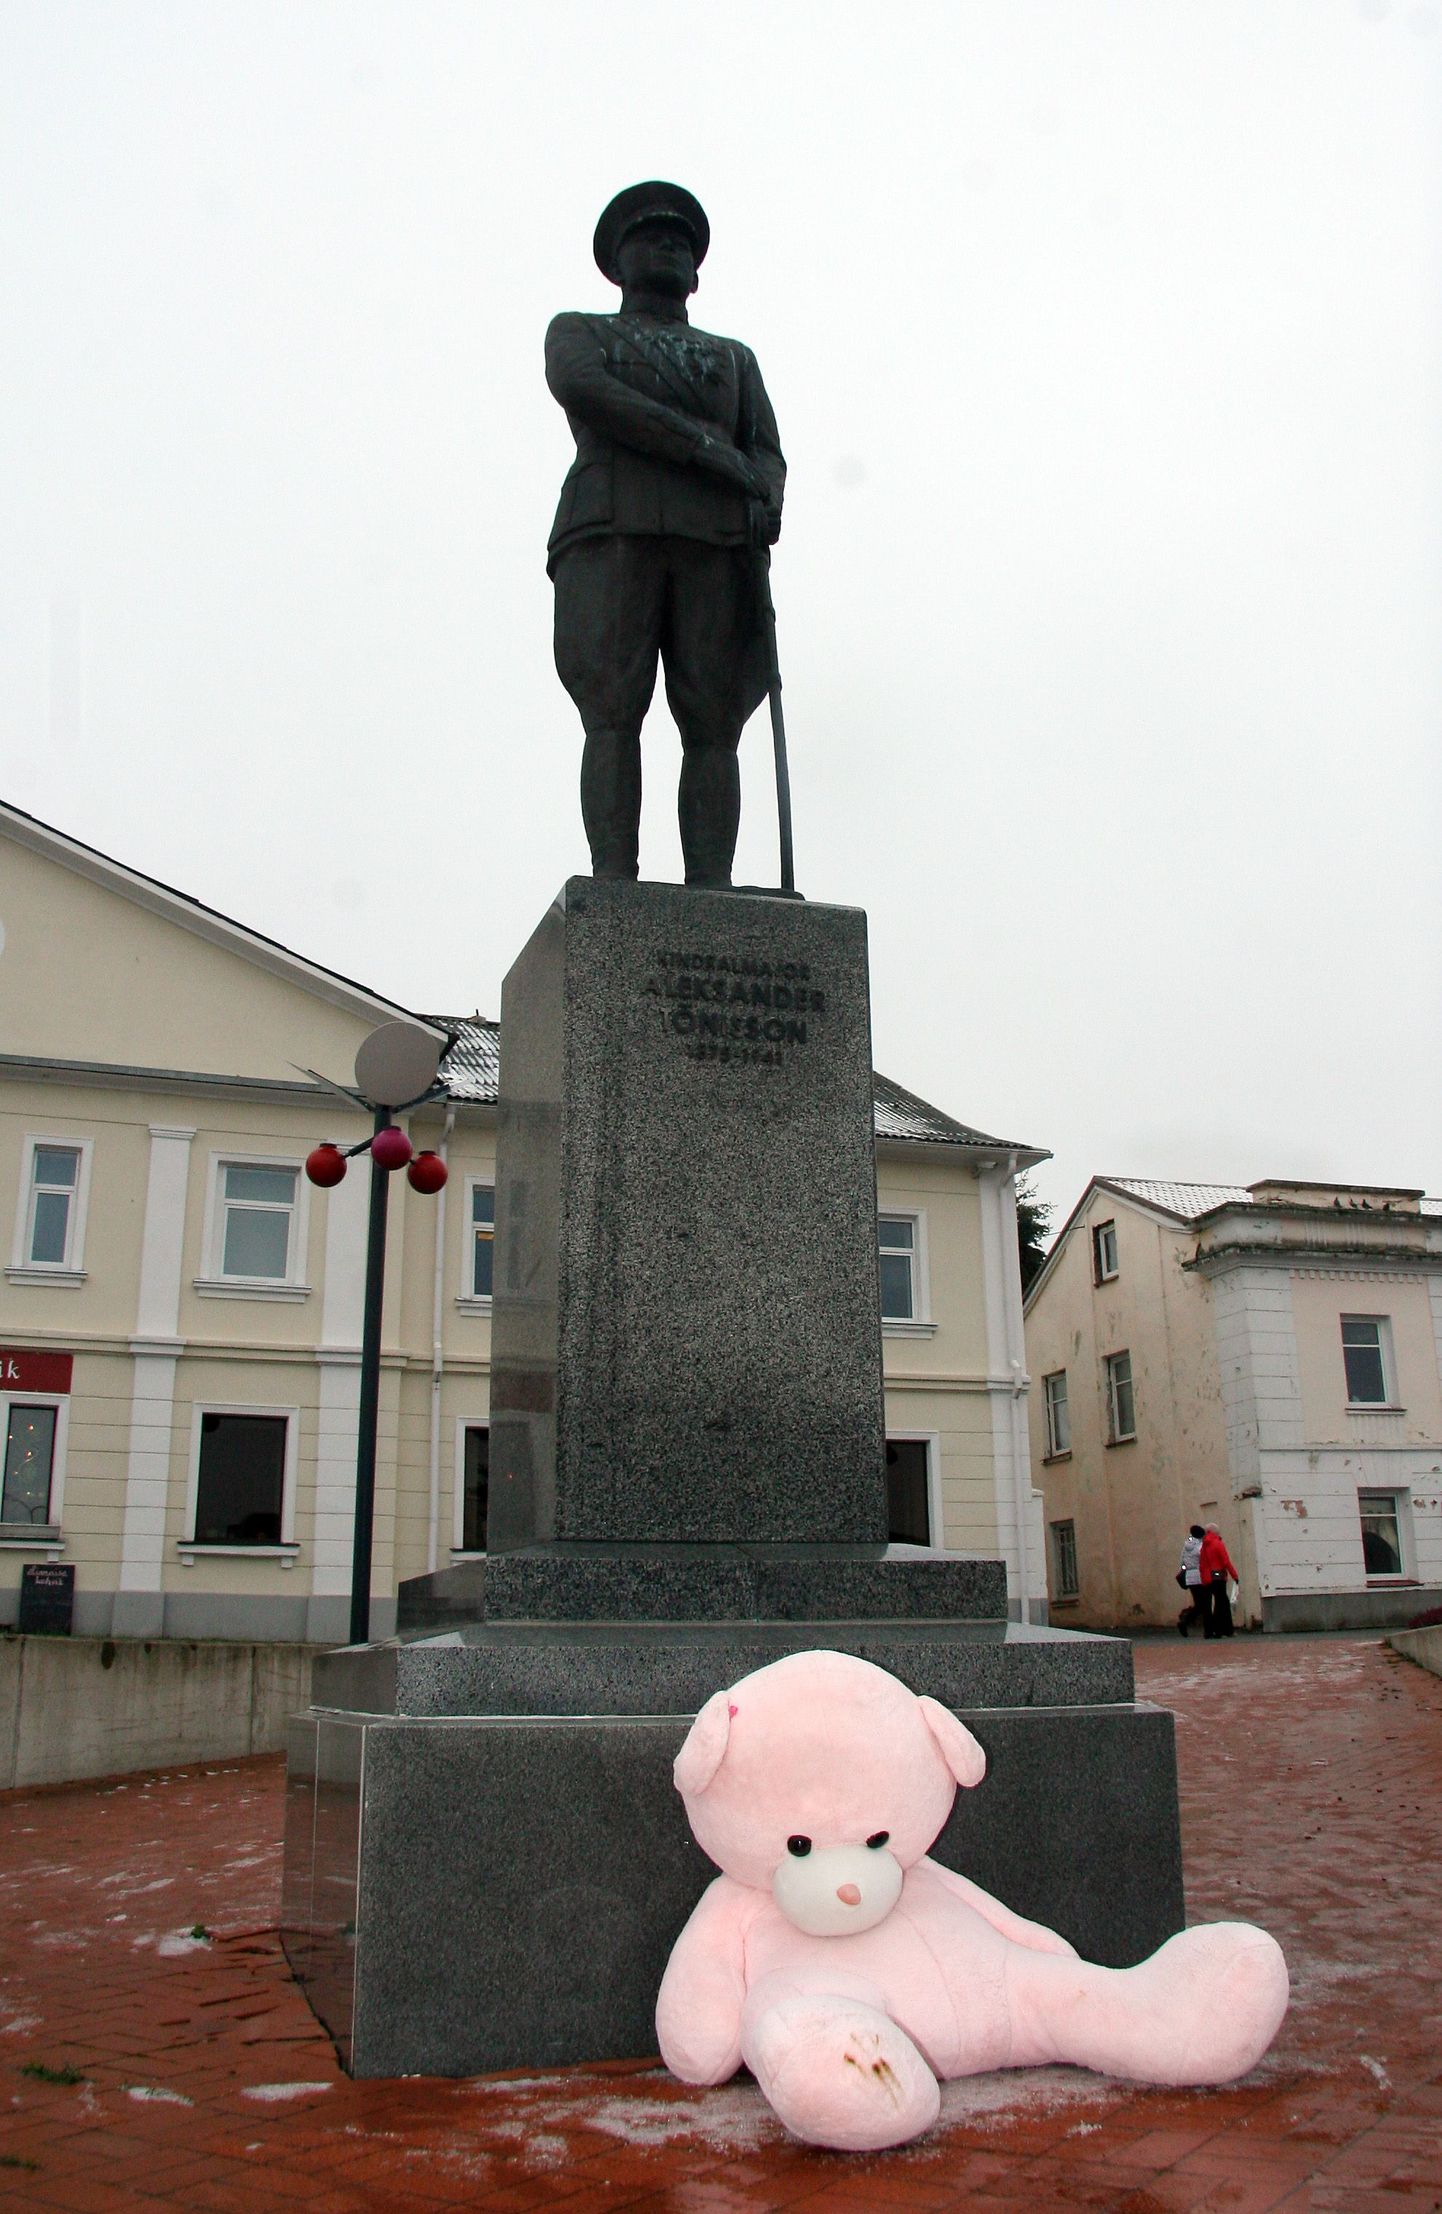 В четверг кто-то неизвестный принес большого розового мишку к статуе генерала Александера Тыниссона на центральной площади Йыхви.